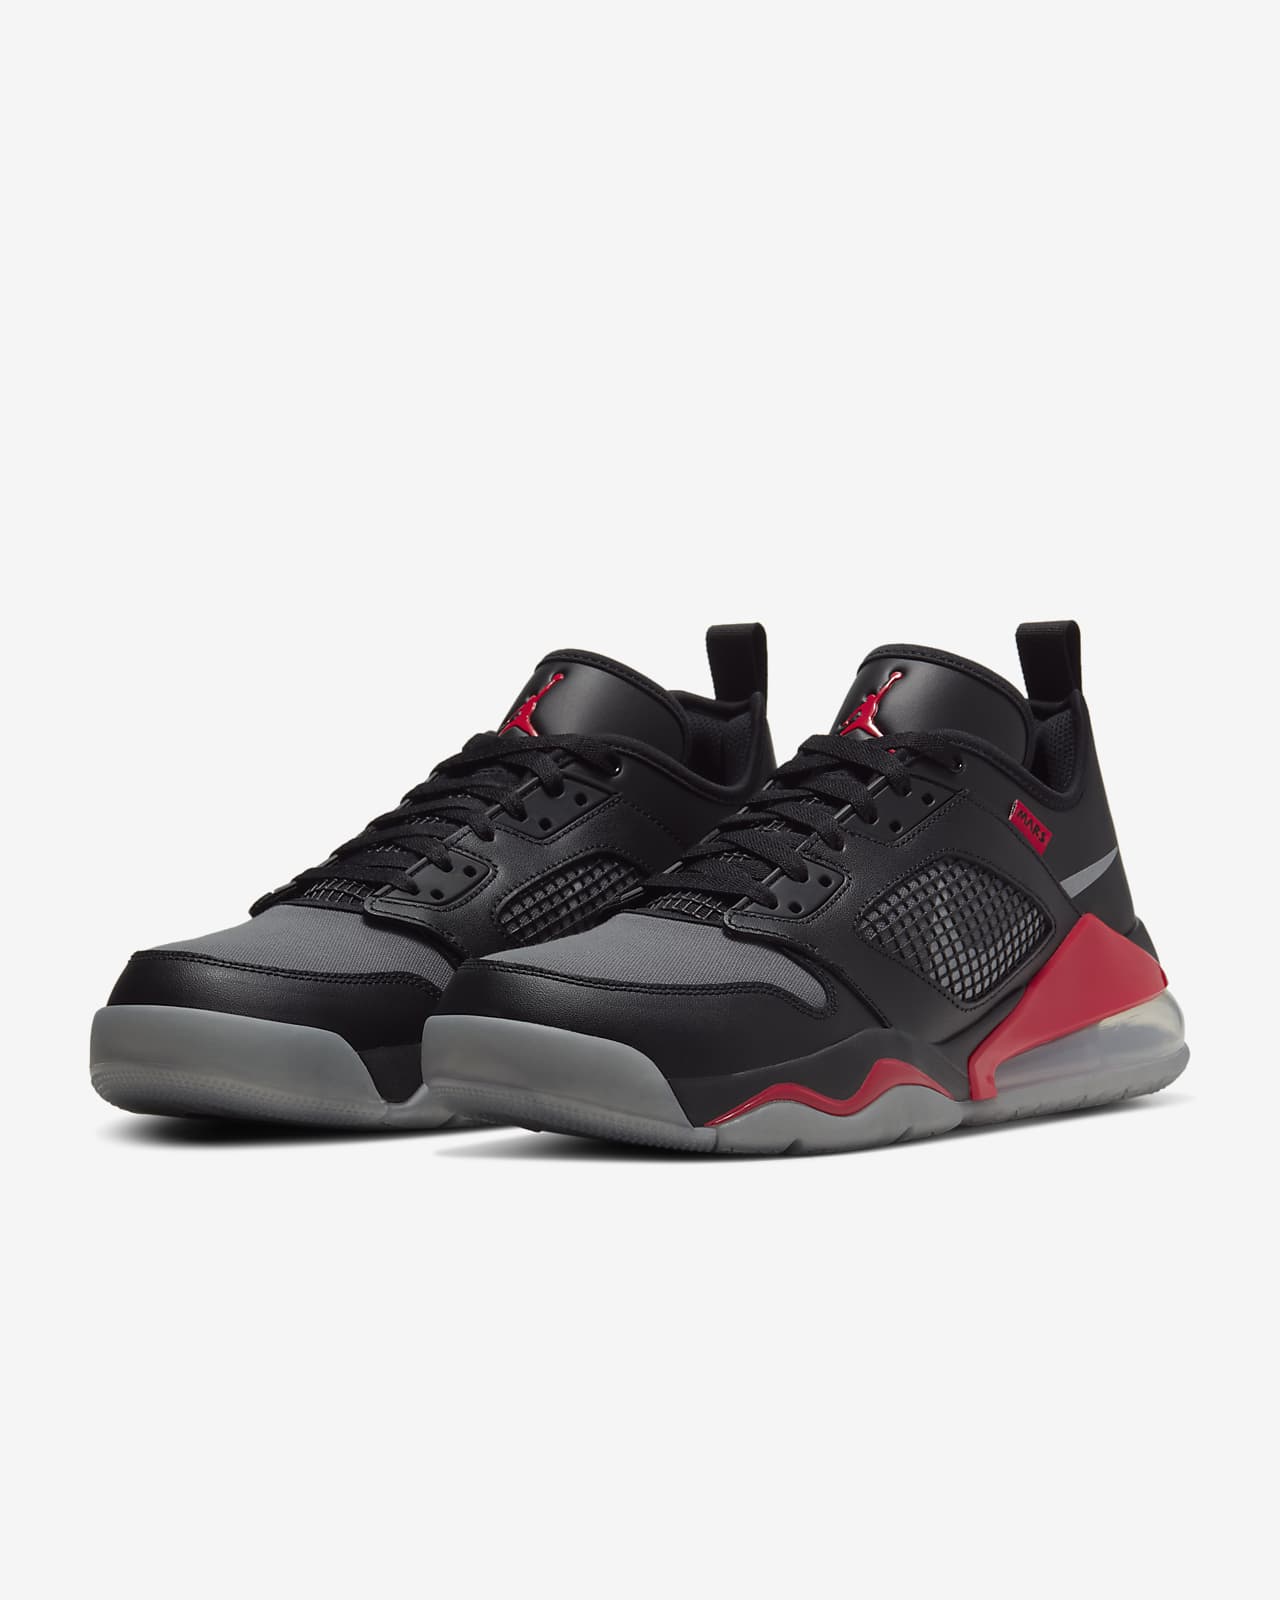 Jordan Mars 270 Low Men's Shoe. Nike MY